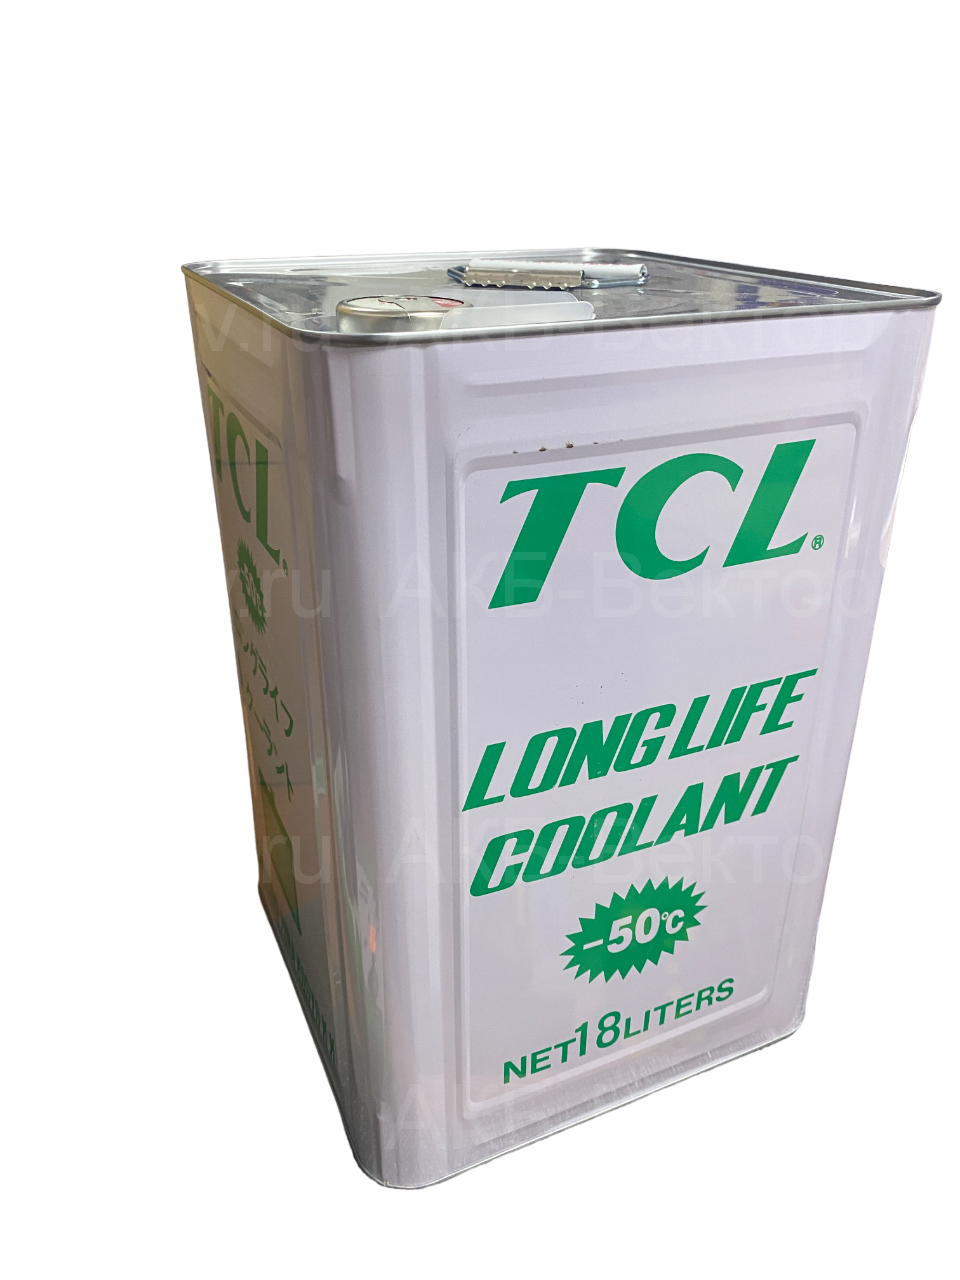 Антифриз TCL Long Life Coolant LLC00758 -50C зеленый,18л Япония